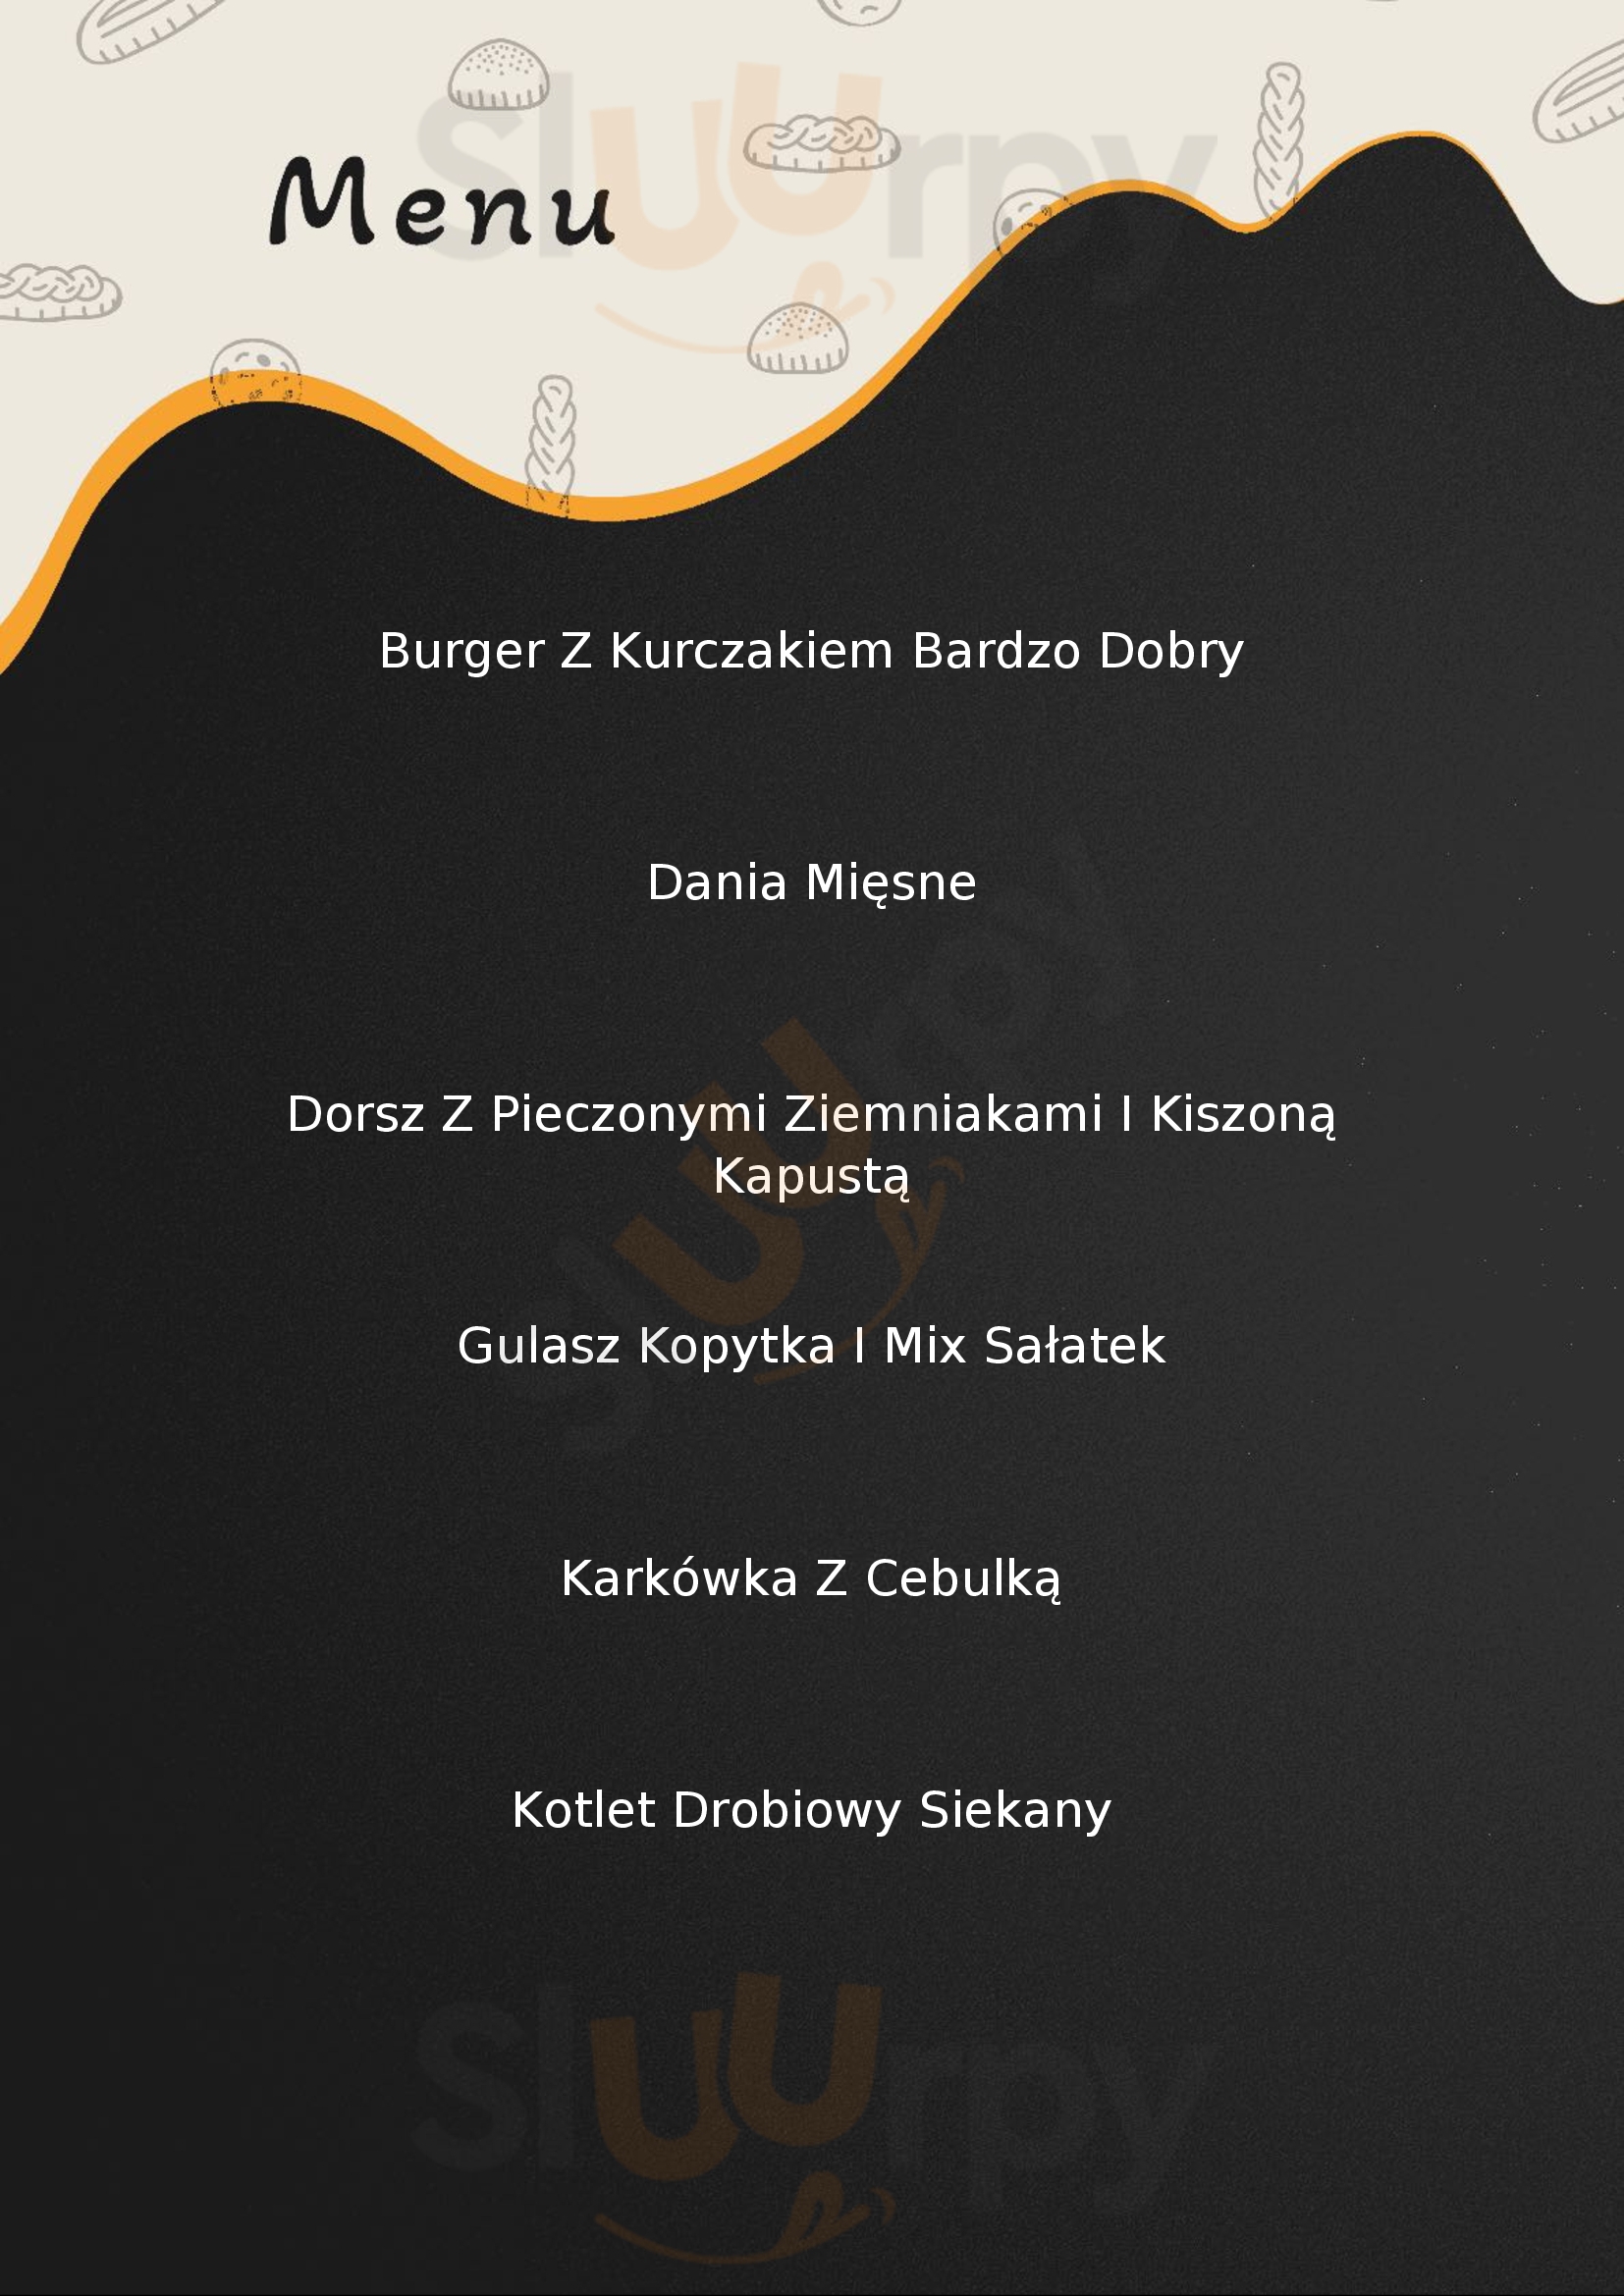 Figa Ze Smakiem - Bistro & Restauracja Elbląg Menu - 1